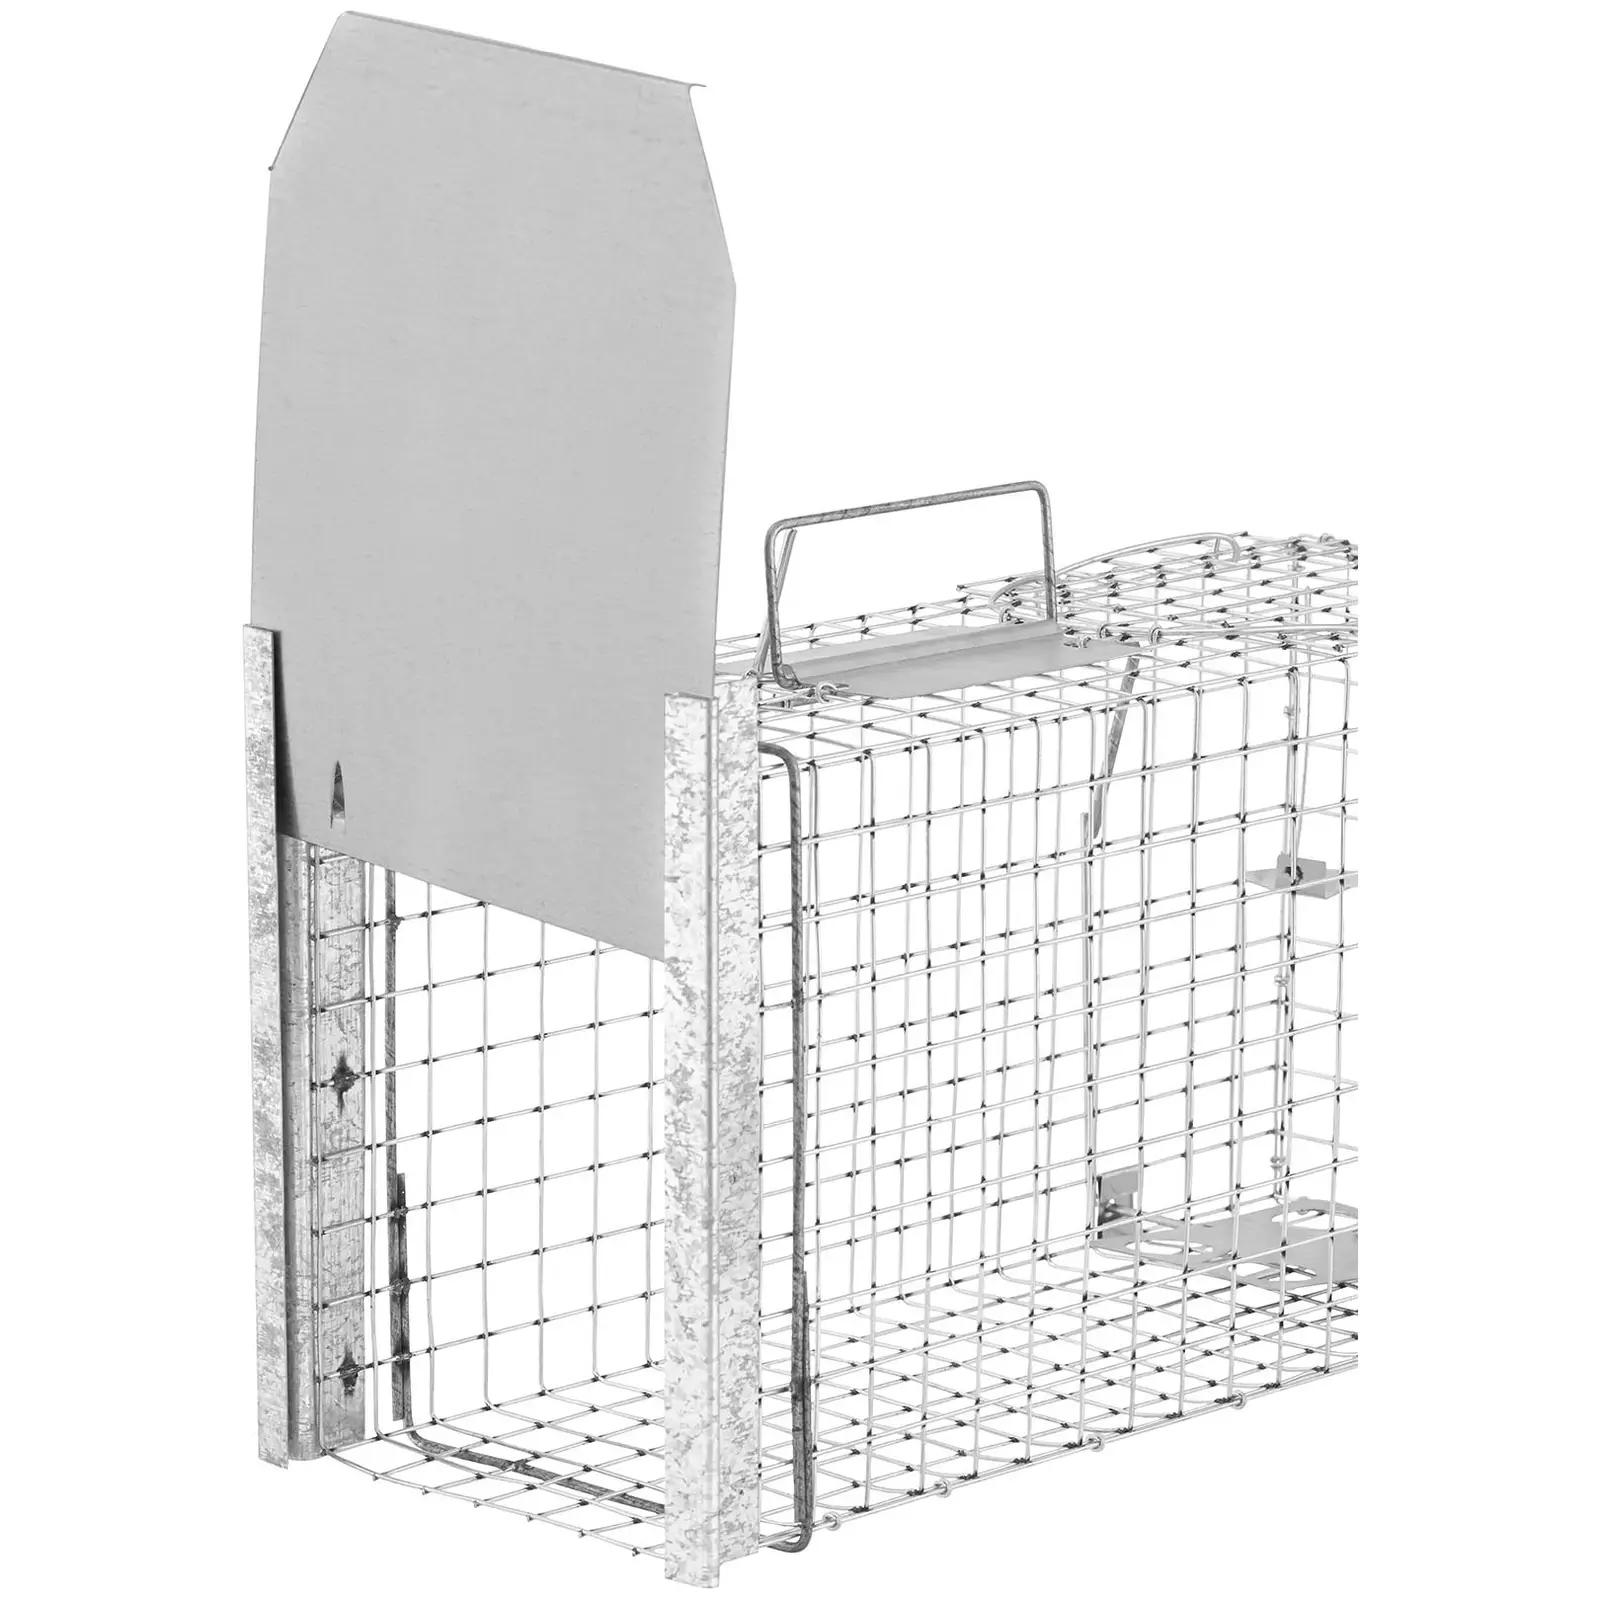 Trappola per animali - 50 x 20 x 27 cm - Dimensioni della grata: 25 x 25 mm - 3 pezzi